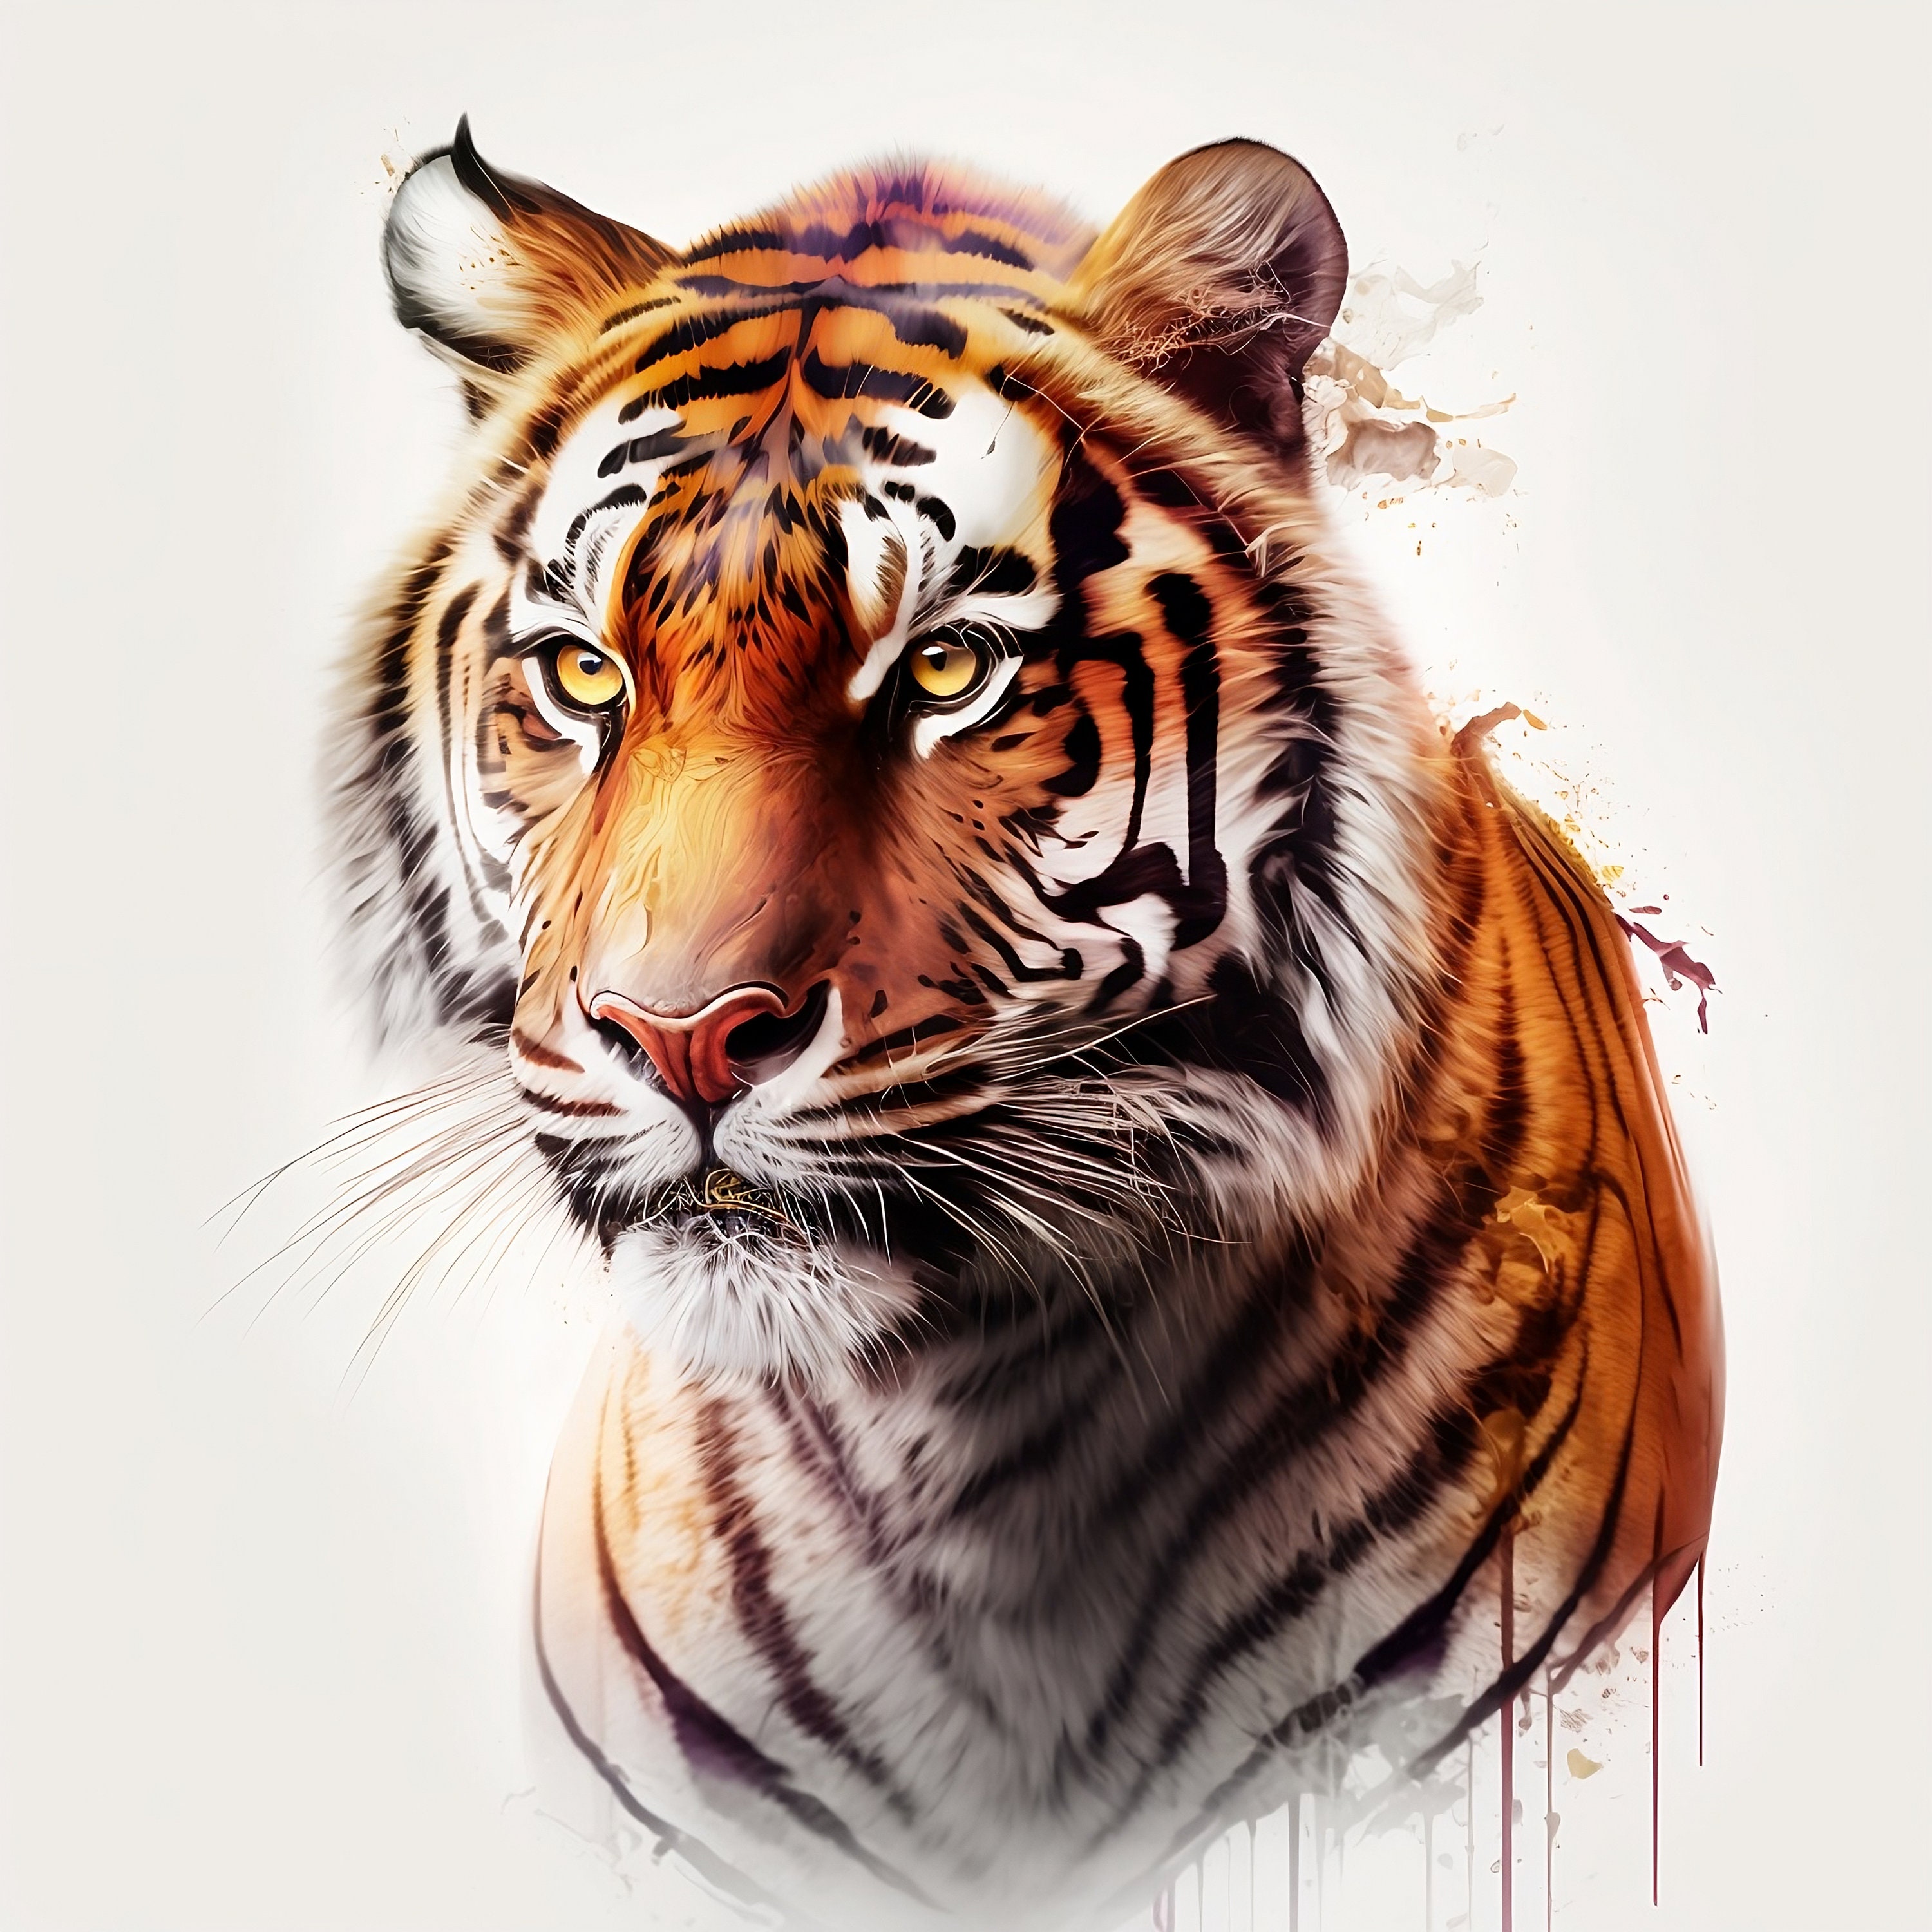 Mad Ink Magic Tattoo Studio - Tiger face tattoo designs on handcustomize tattoo  designs artist by MAD INK MAGIC TATTOO STUDIO @sandip 8779370586,9594131843  Book your appointment #animalstattoo #tiger #tigertattoo #portraits Name  TATTOO